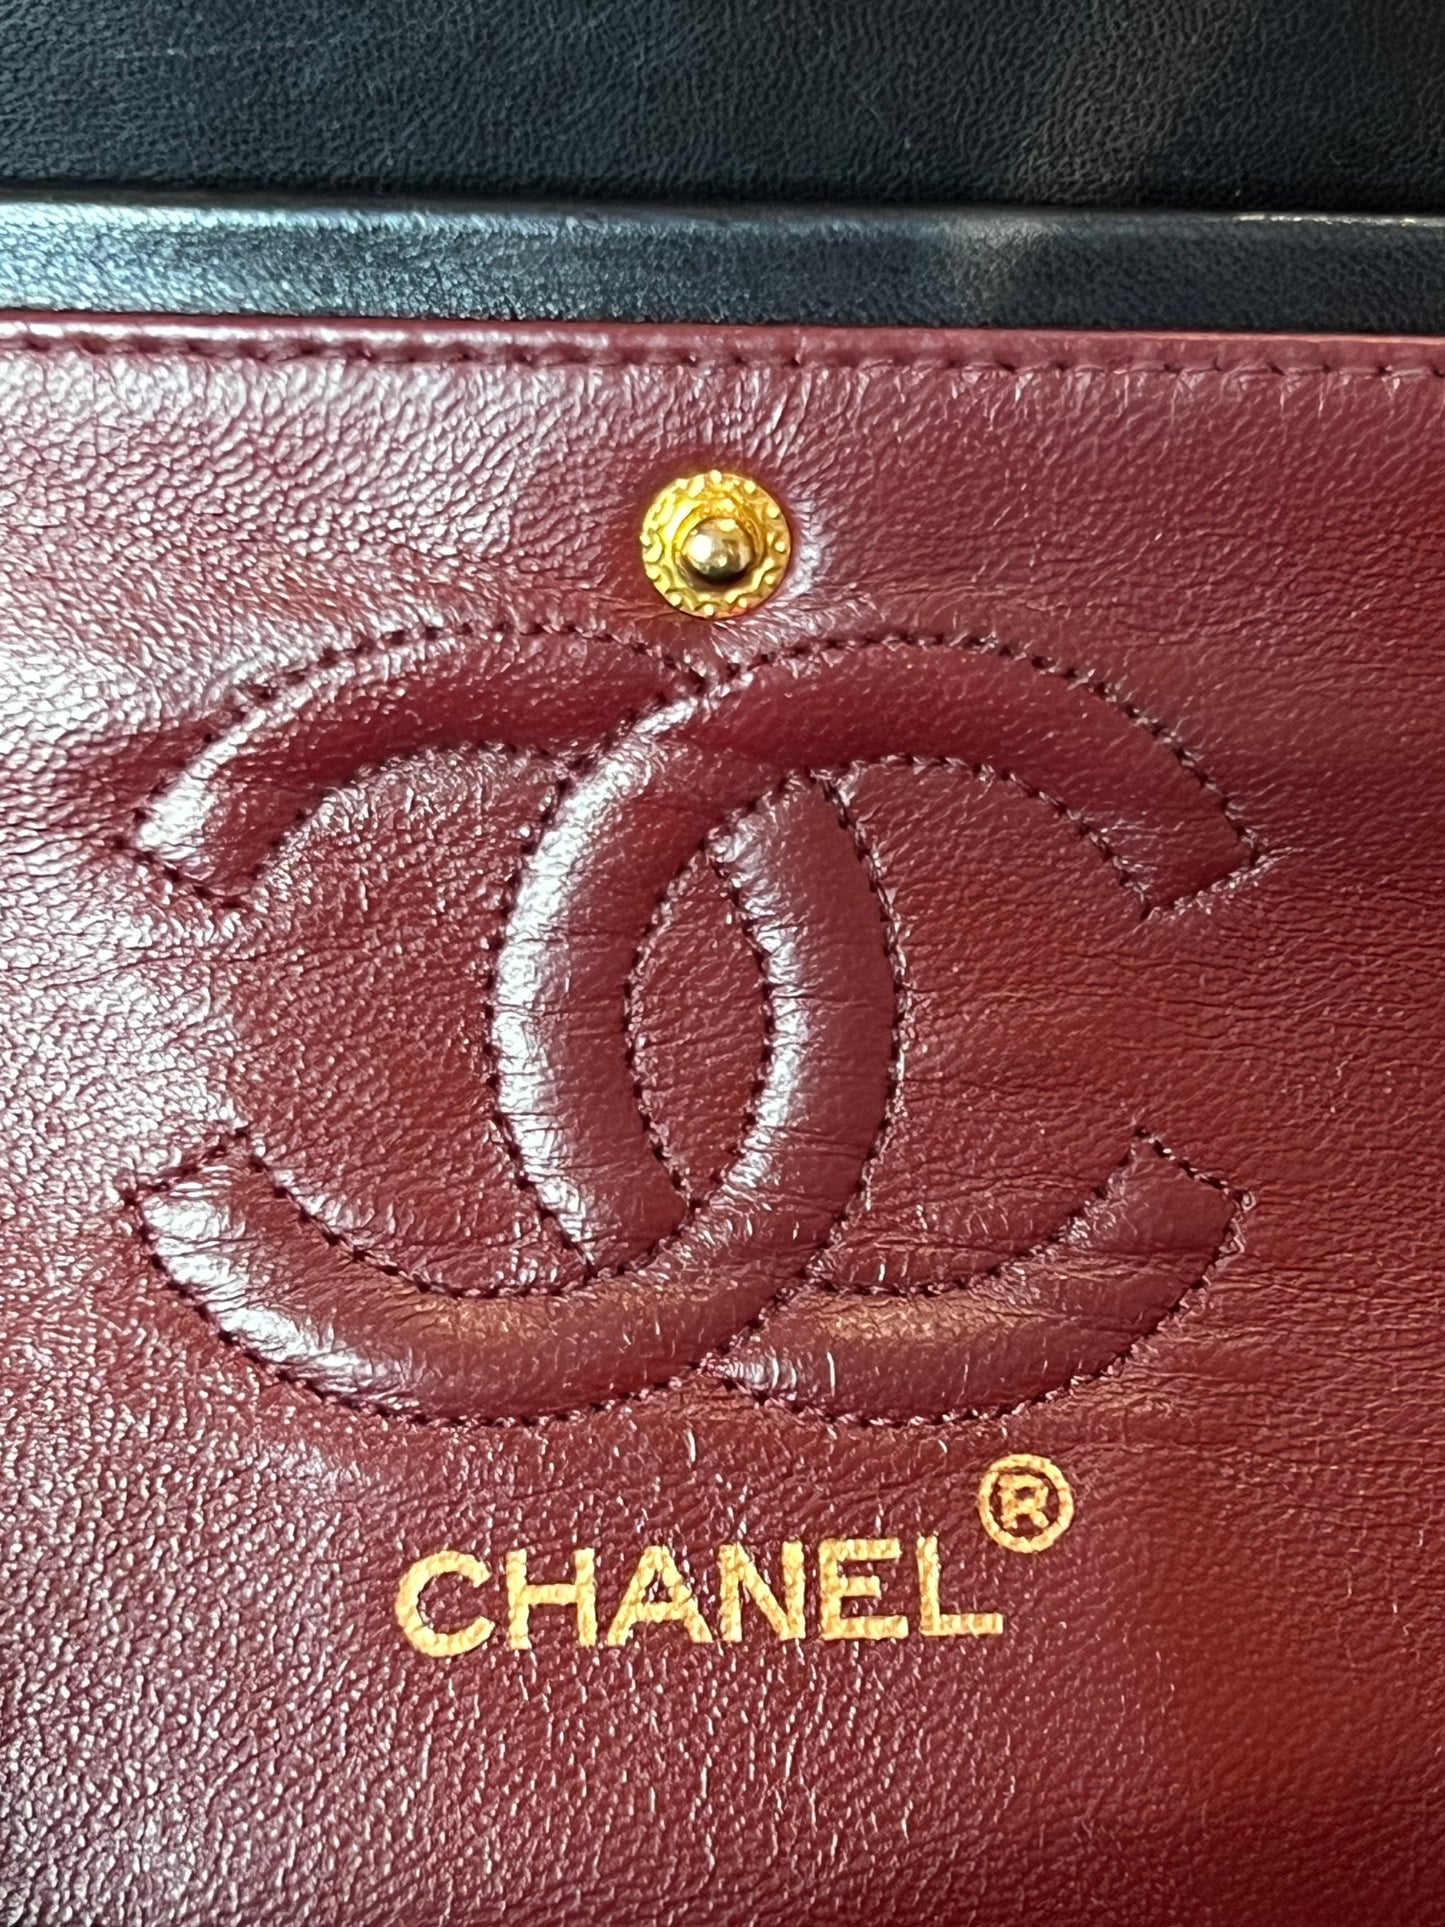 Chanel Timeless 2.55 vintage bag 23 cm